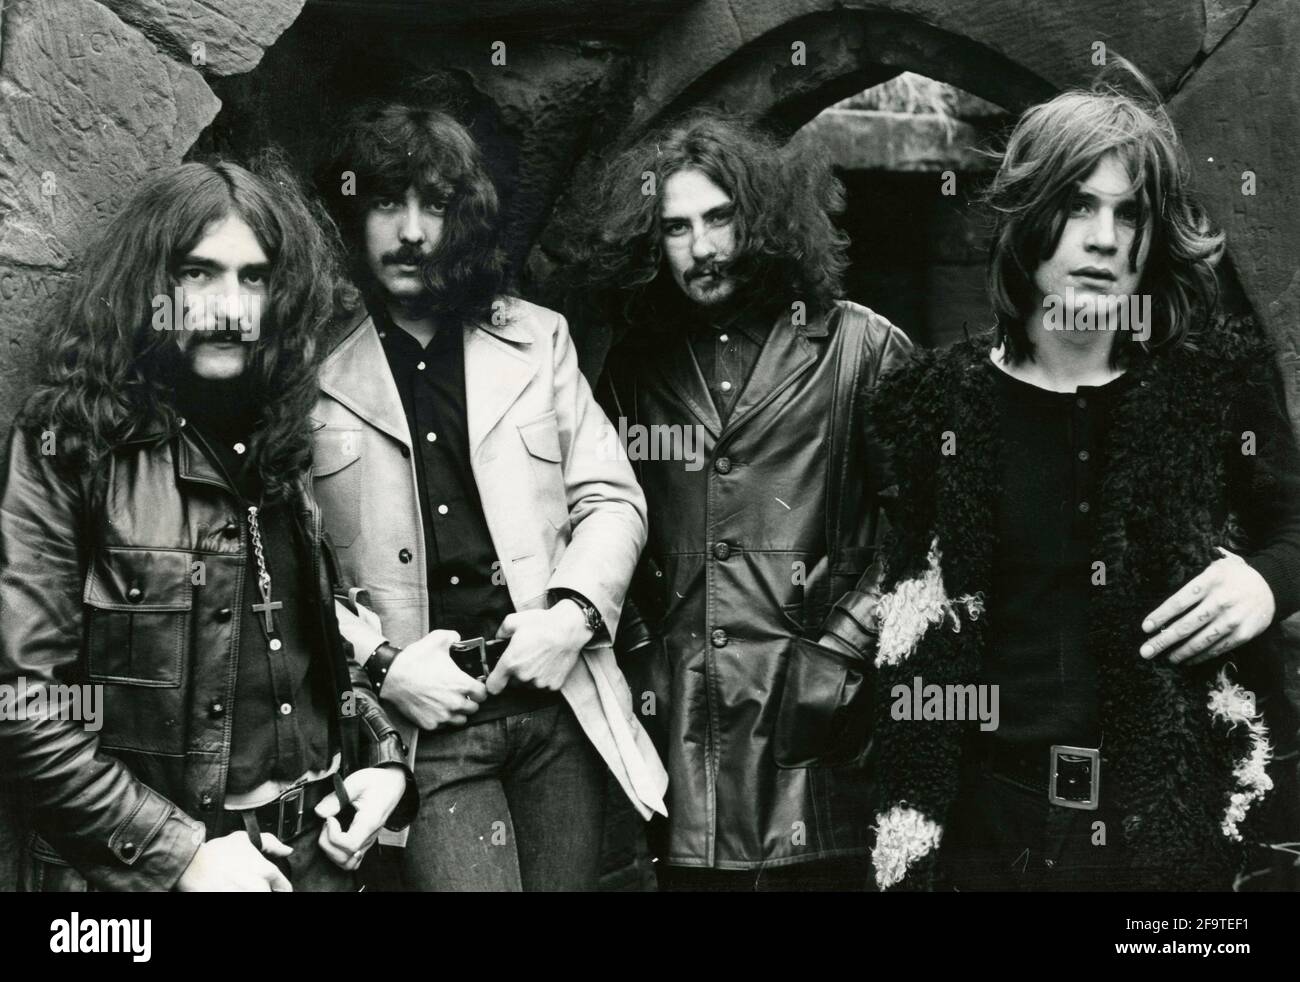 Banda inglesa de rock Black Sabbath: El guitarrista Tony Iommi, el baterista Bill Ward, el bajista Geezer Butler y el vocalista Ozzy Osbourne Foto de stock